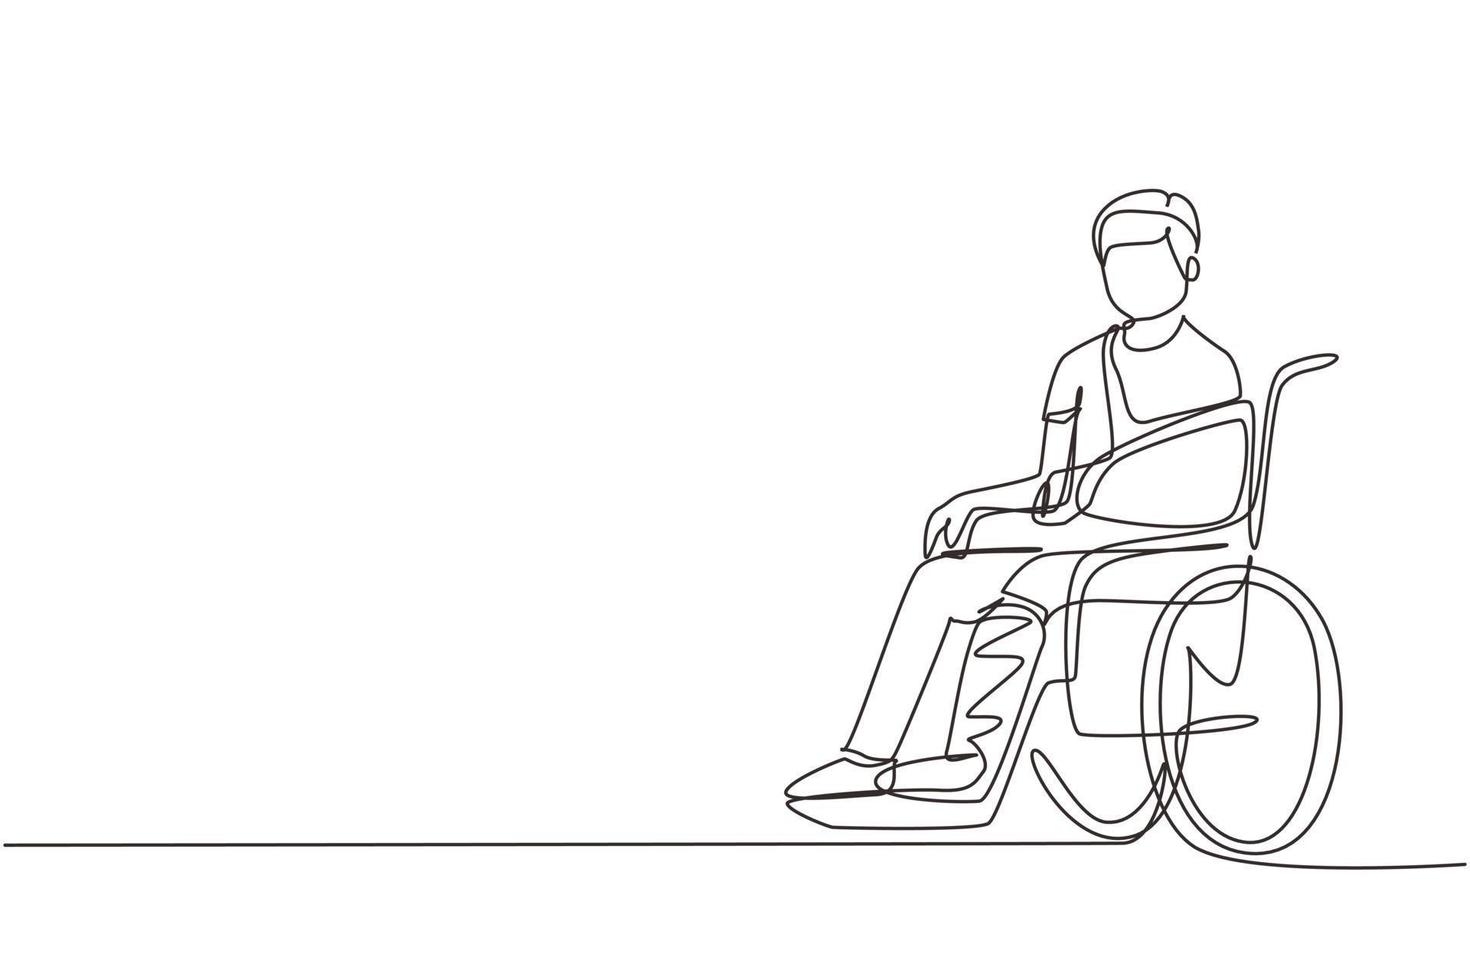 enkele doorlopende lijntekening zieke man met verwondingen, gips zit in een rolstoel. gewonde man zittend in rolstoel met gebroken been. man met gebroken been. één lijn tekenen ontwerp vectorillustratie vector